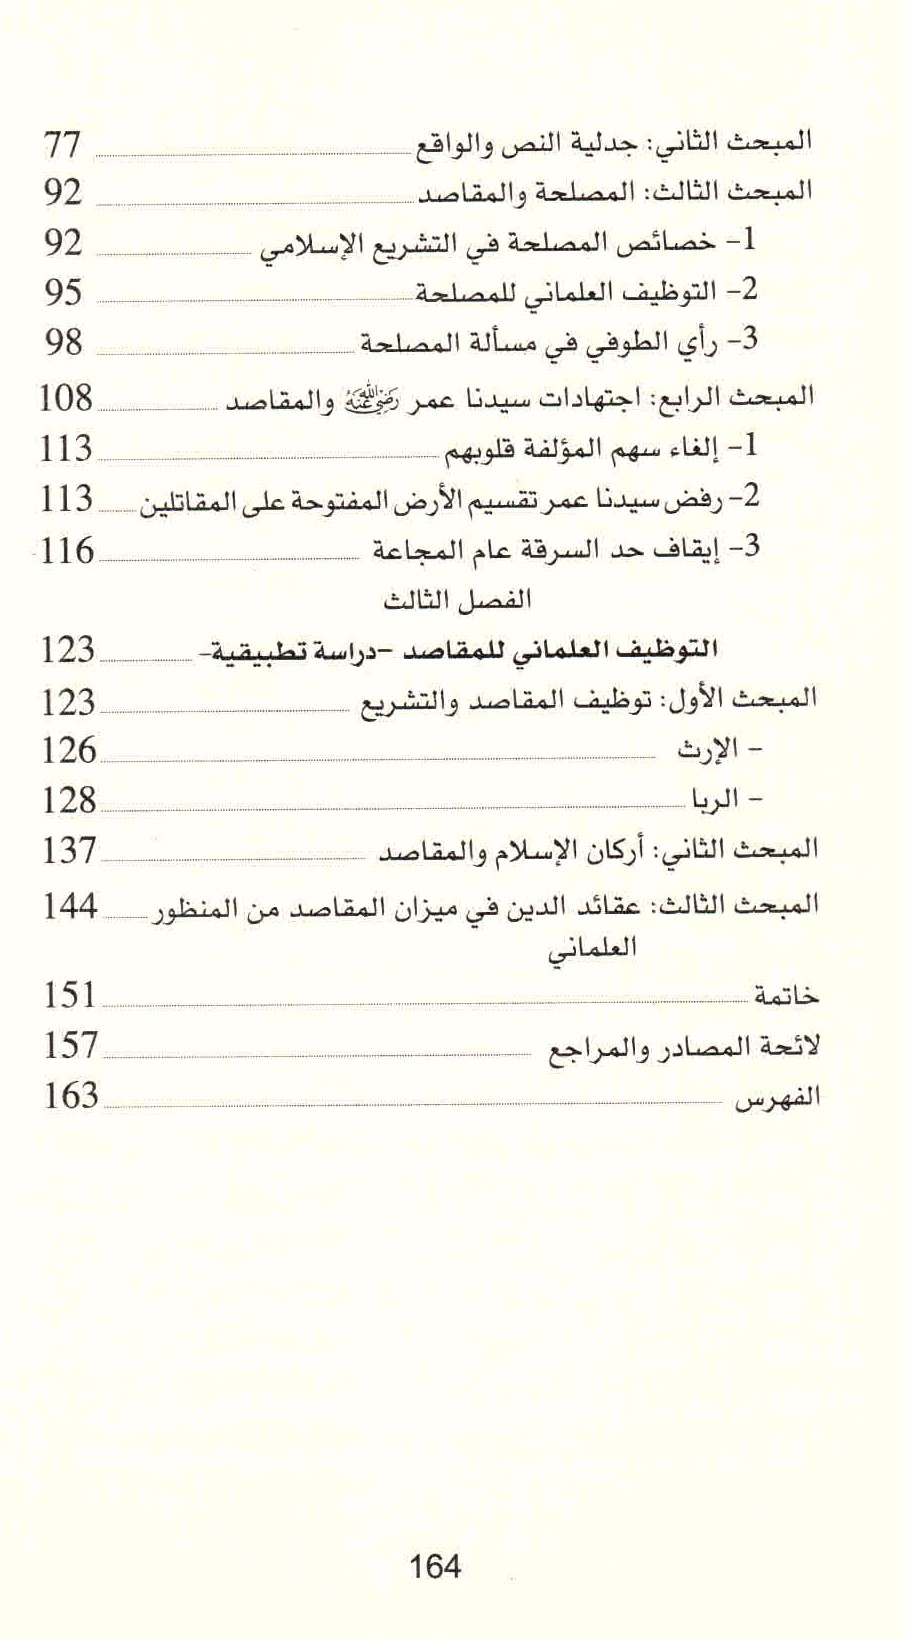 ص. 164 قائمة محتويات كتاب النص القرآني والإجراء العلماني للمقاصد.